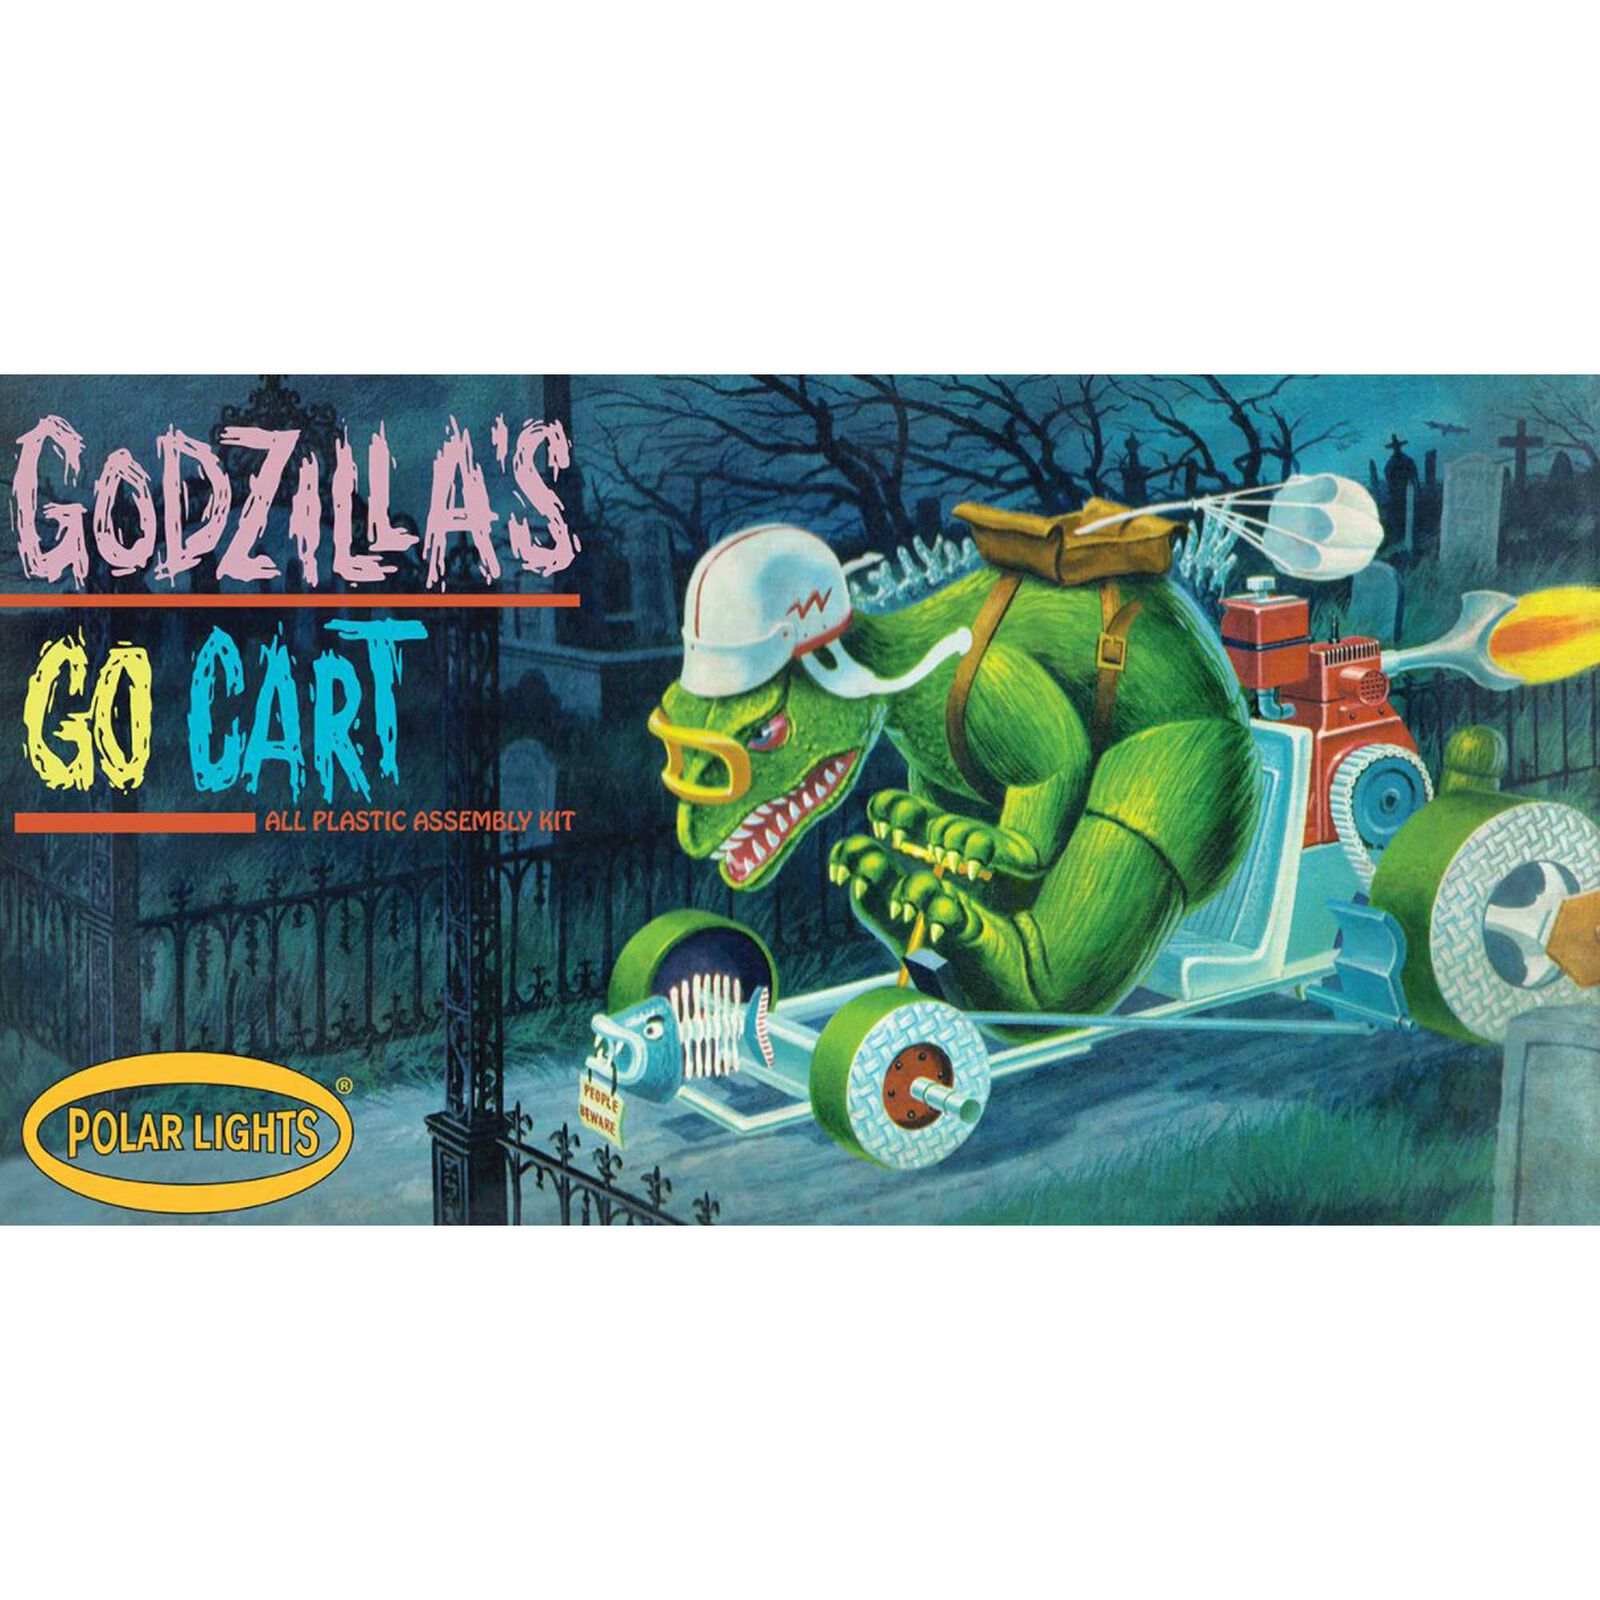 Godzilla's Go Cart